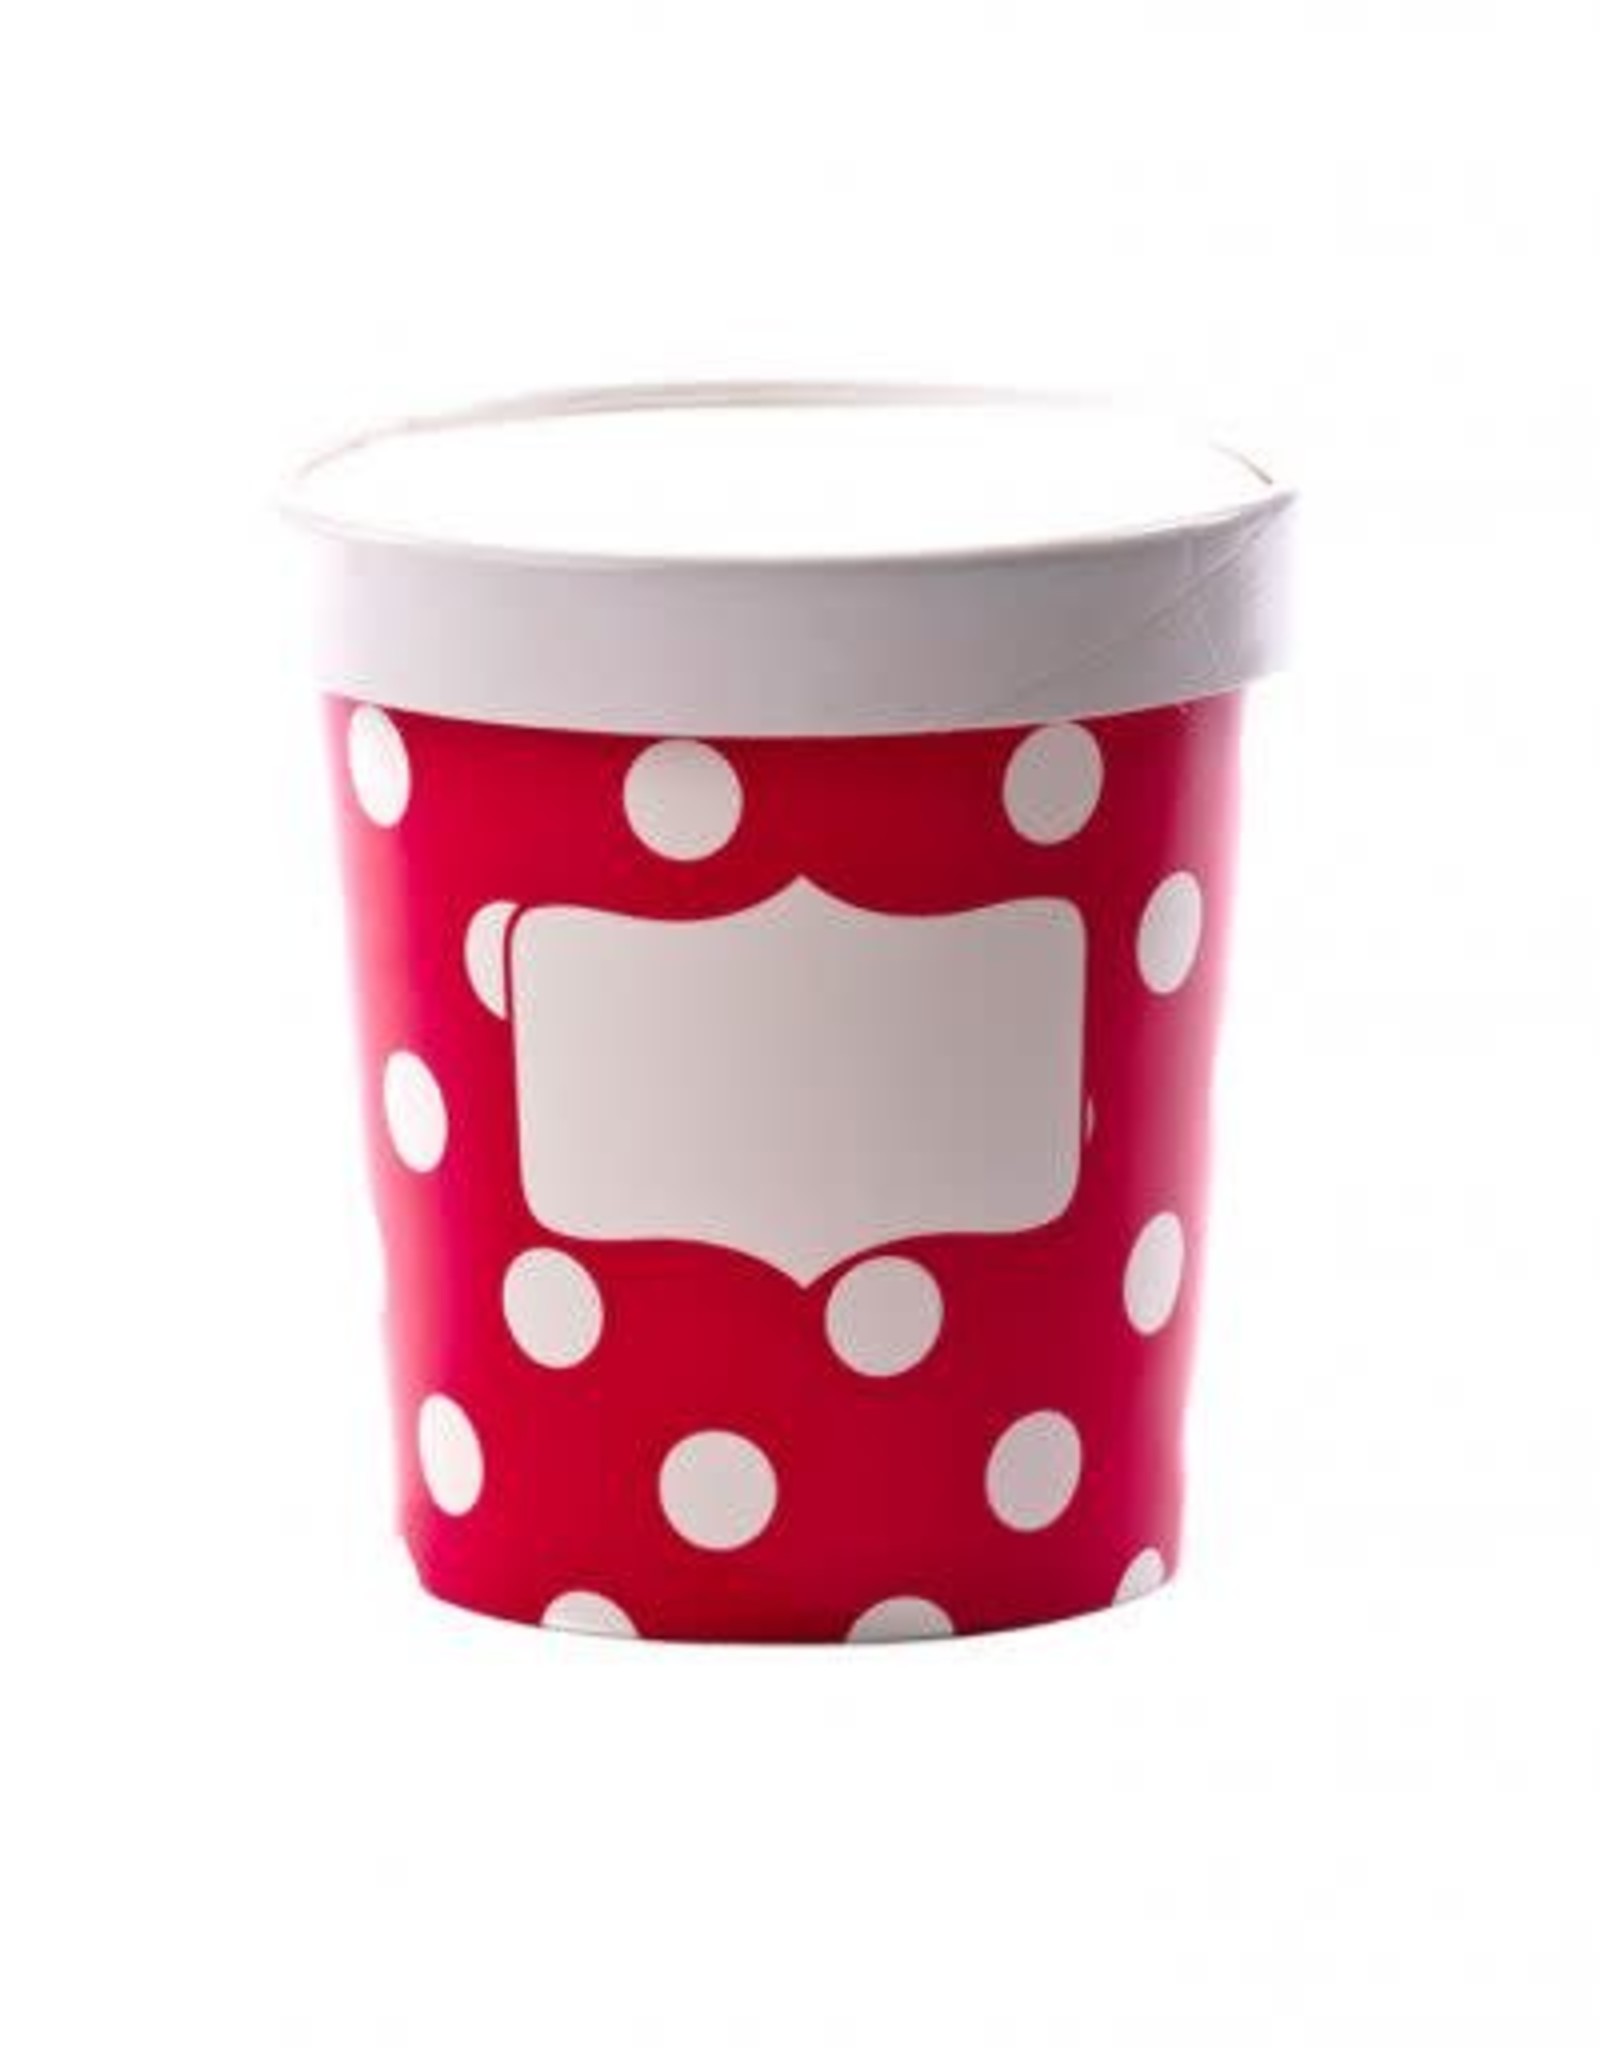 Soup Cups, Small (Scarlet Dot) 3pk